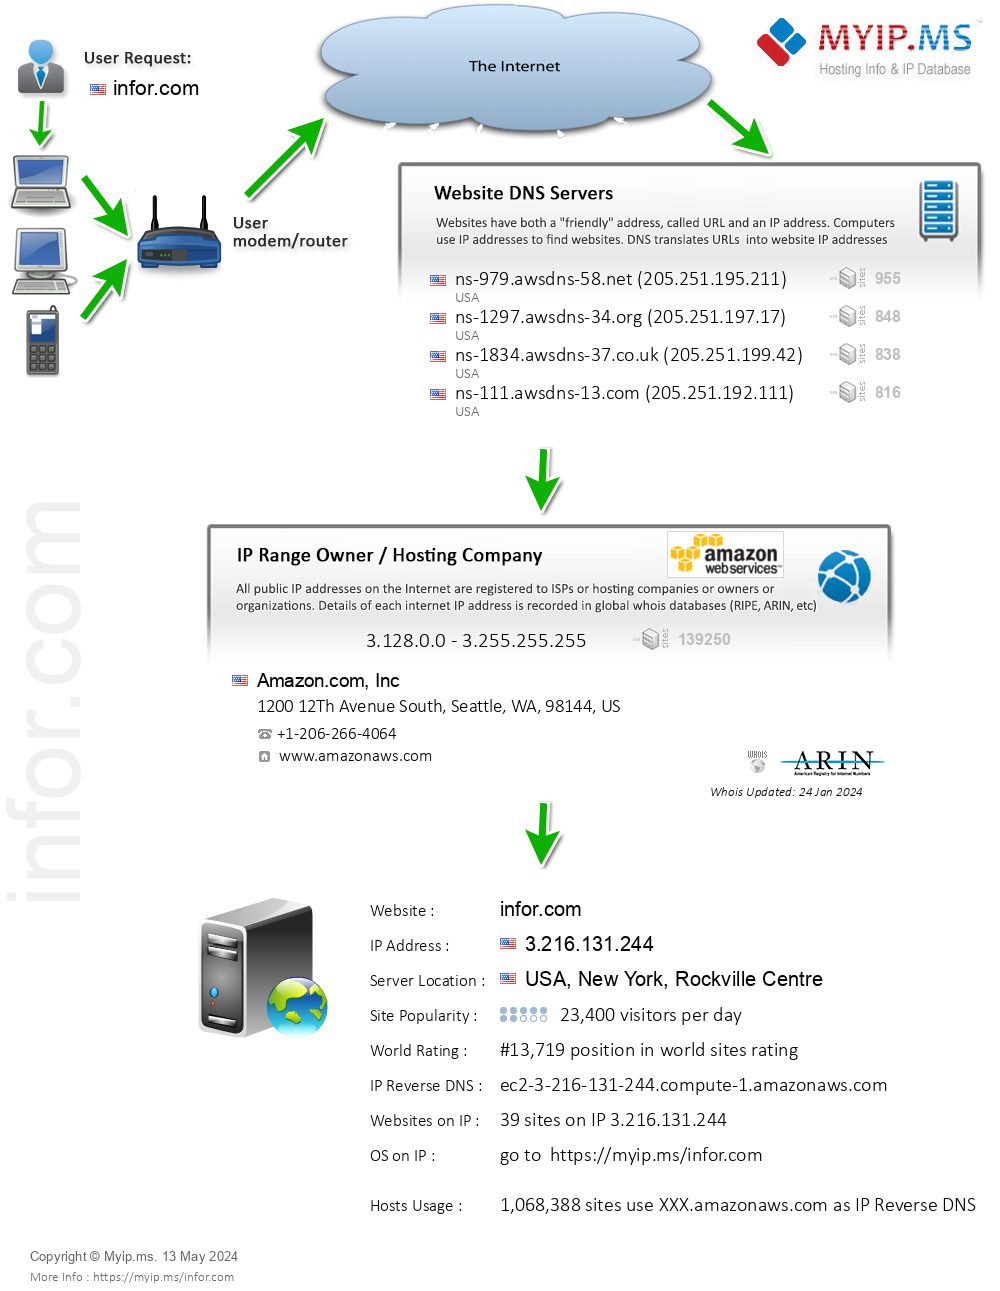 Infor.com - Website Hosting Visual IP Diagram